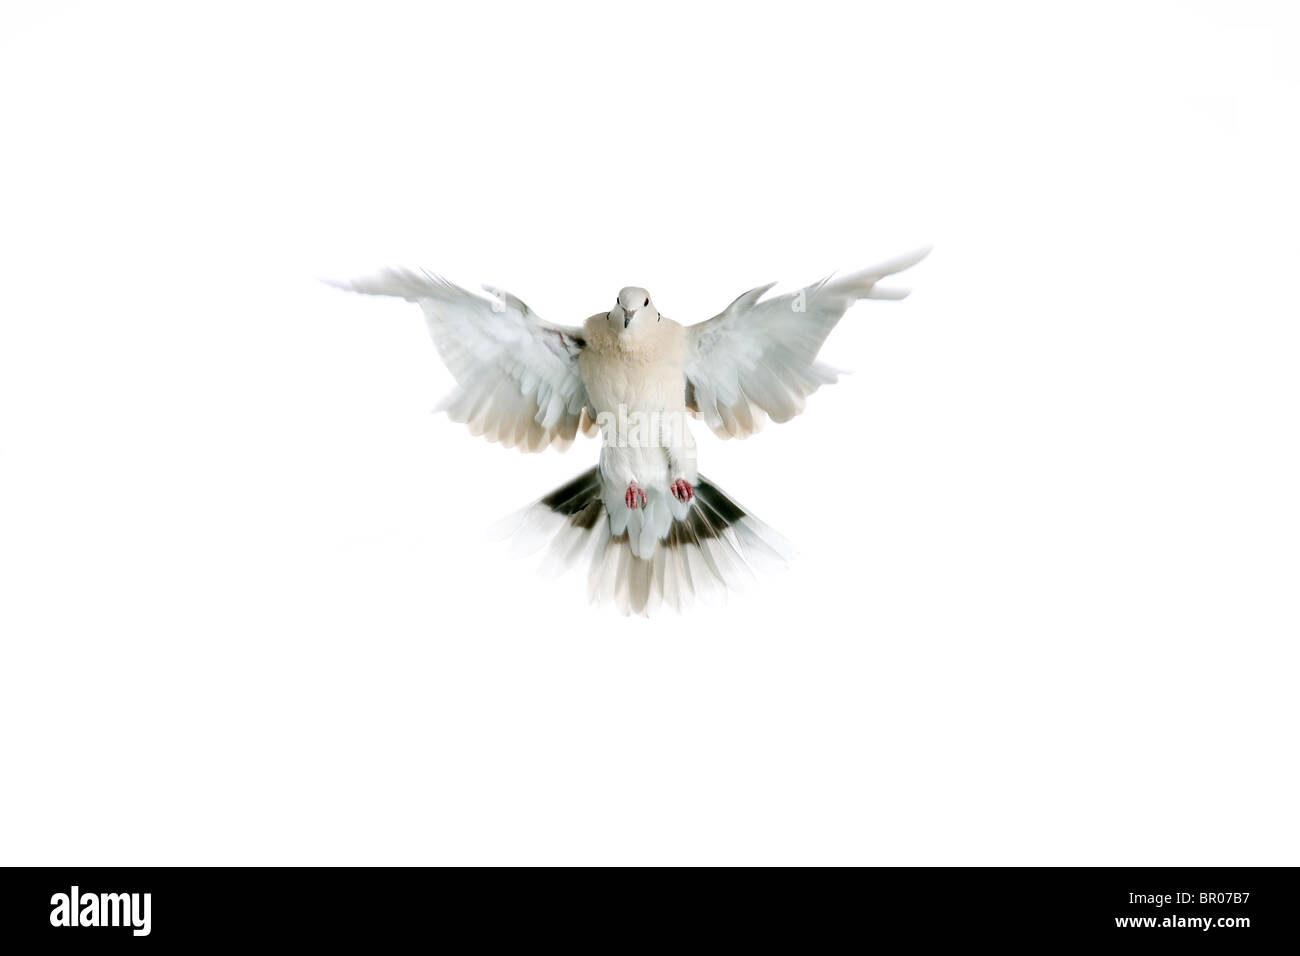 White dove on white background. Stock Photo